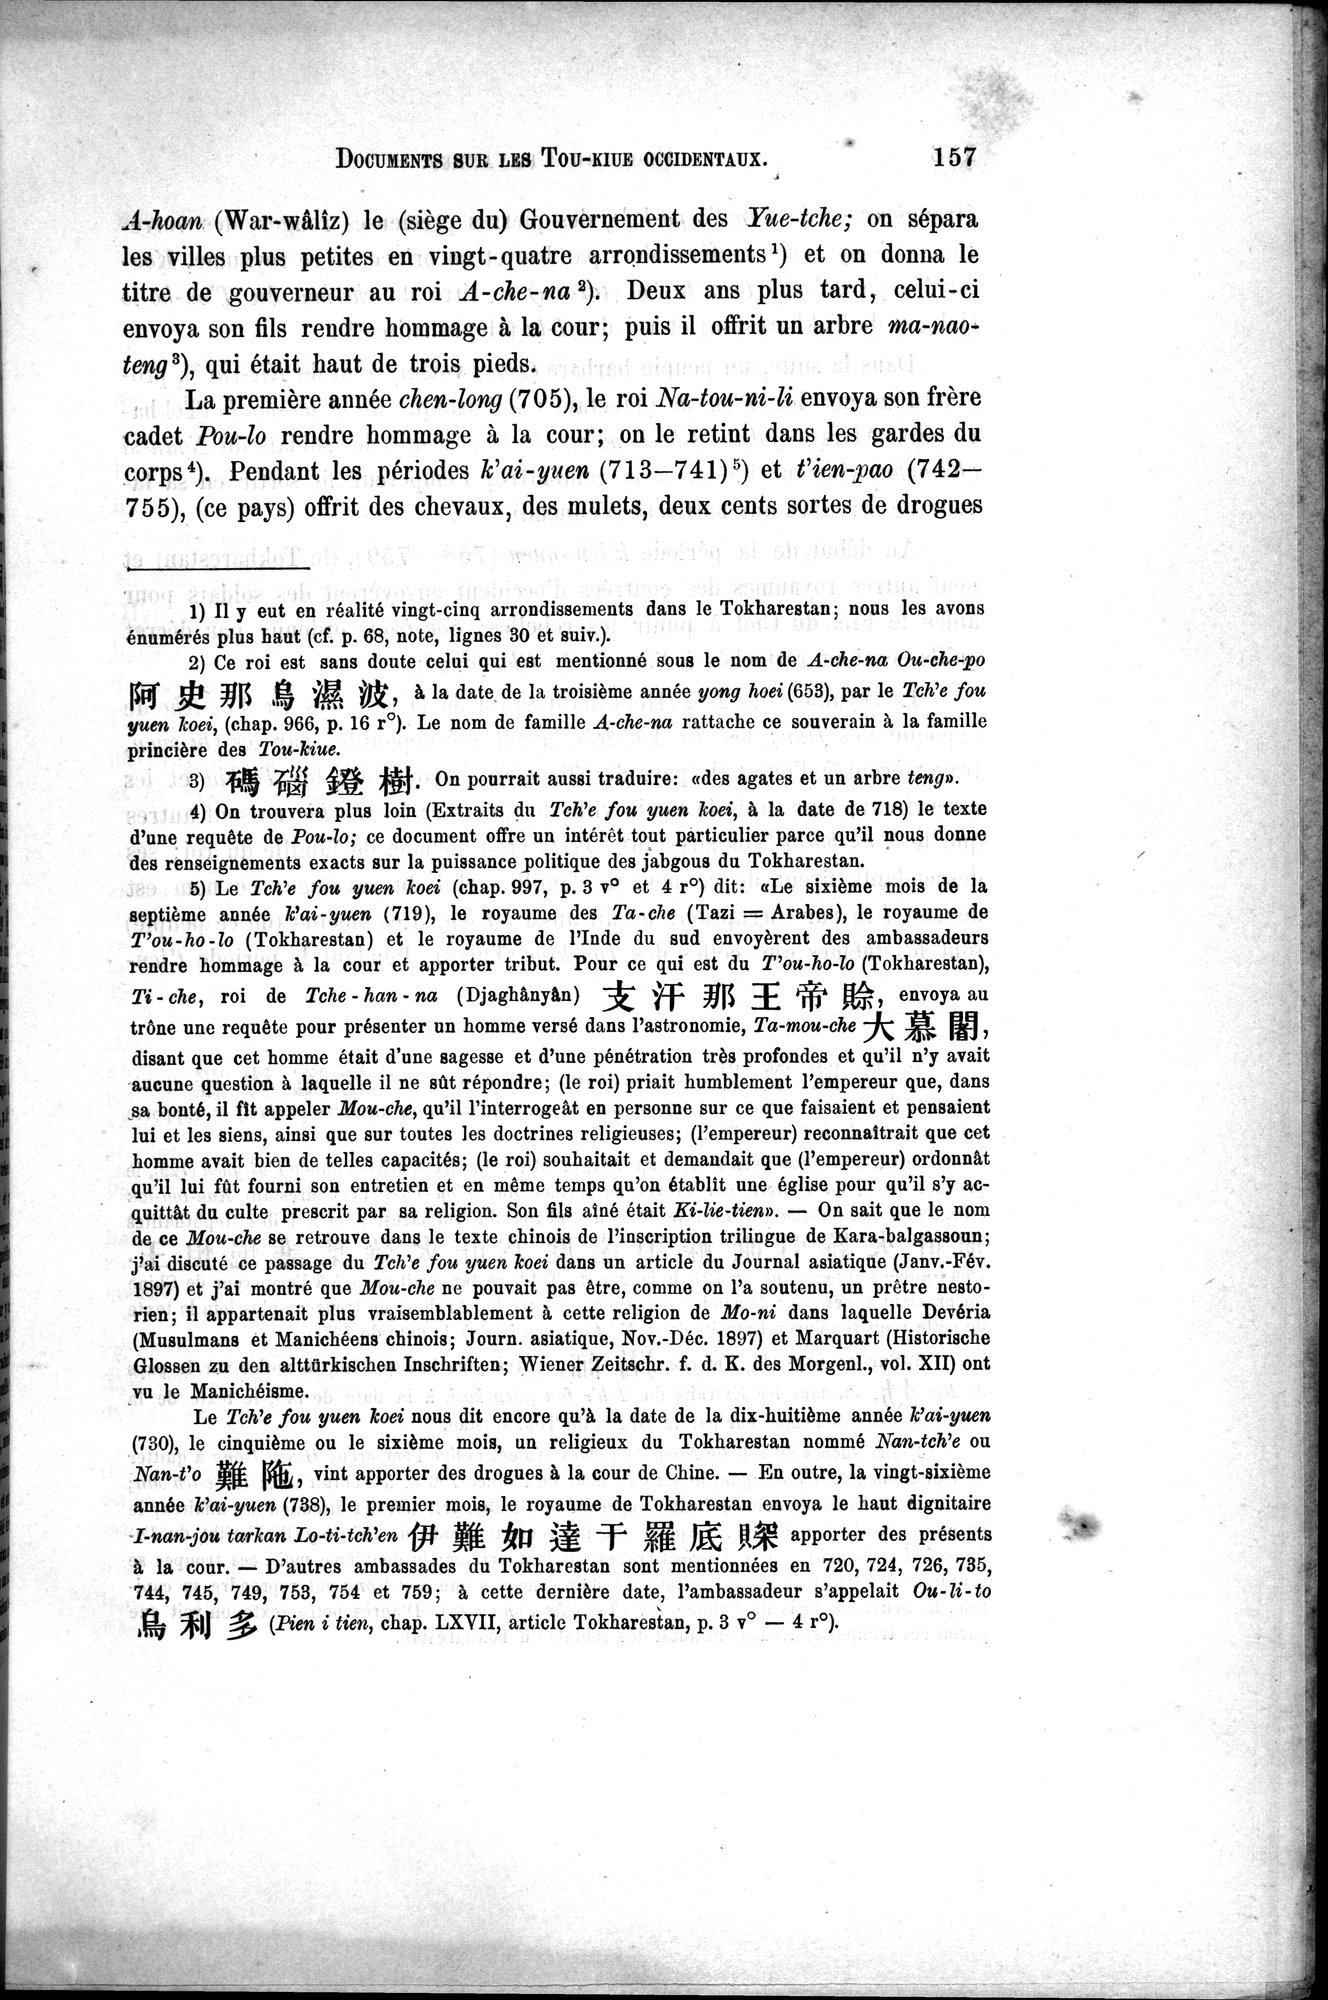 Documents sur les Tou-kiue (Turcs) occidentaux : vol.1 / Page 167 (Grayscale High Resolution Image)